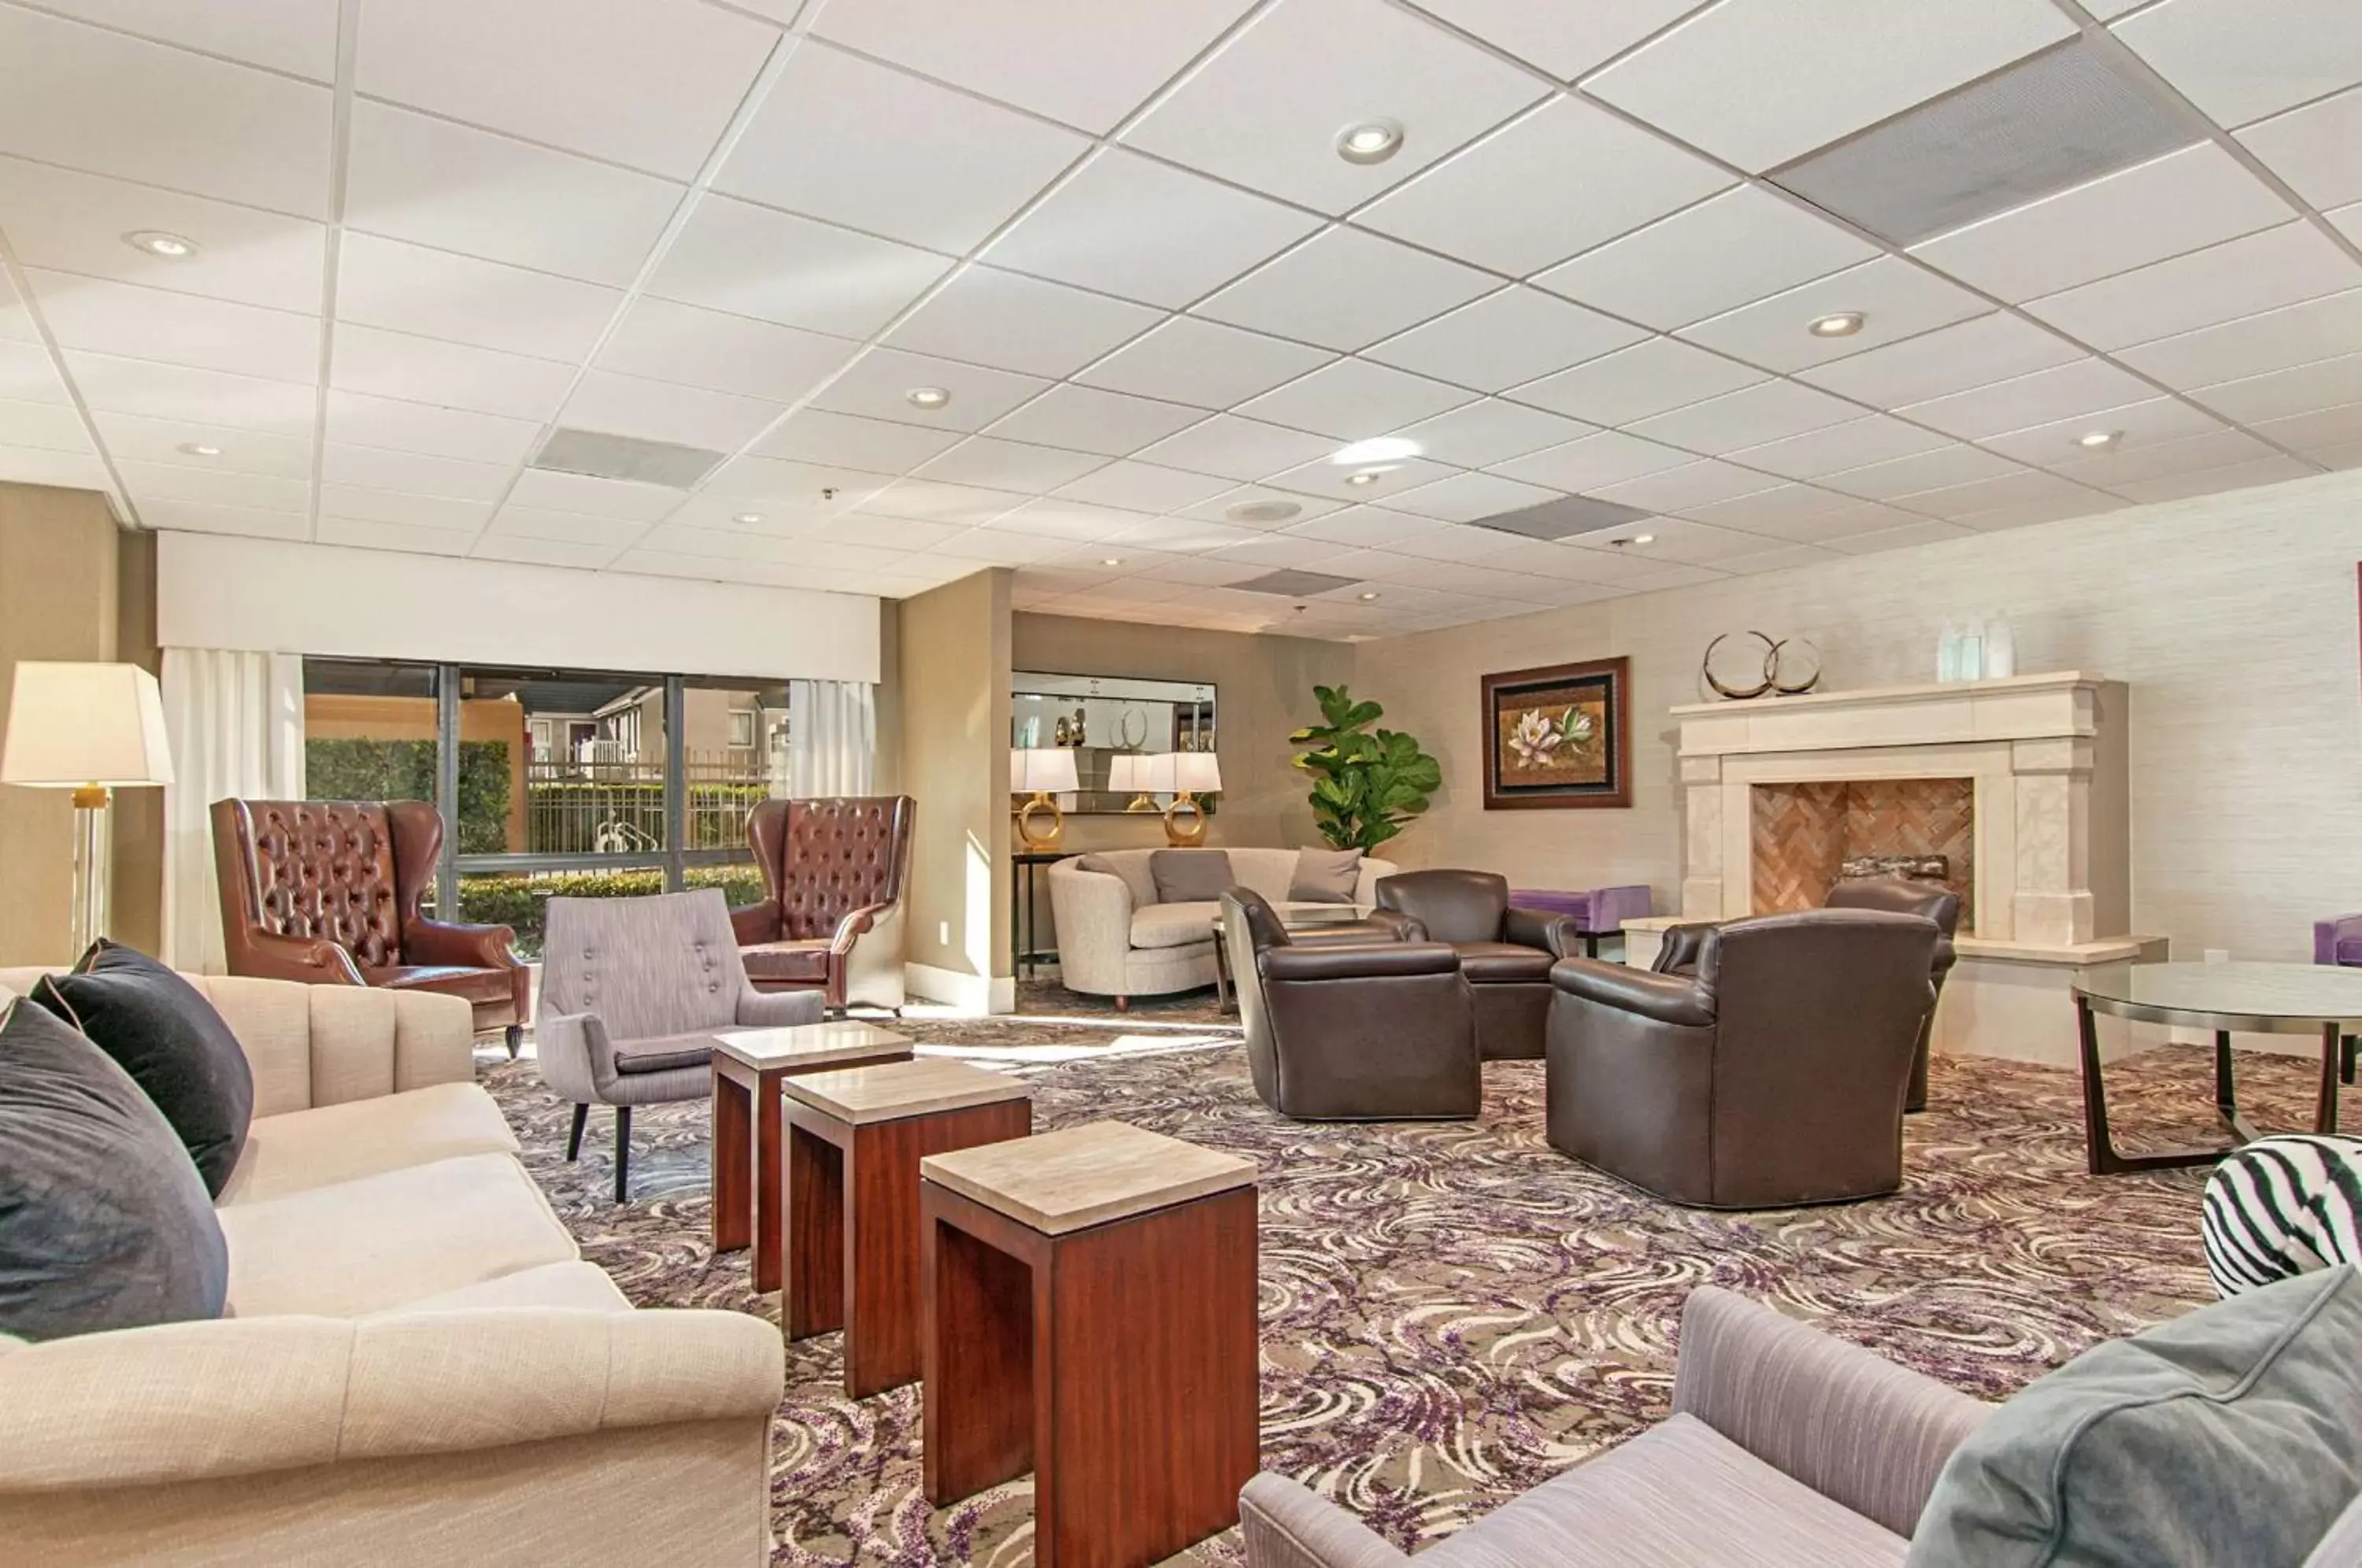 Lobby or reception, Lobby/Reception in Hampton Inn by Hilton San Diego - Kearny Mesa